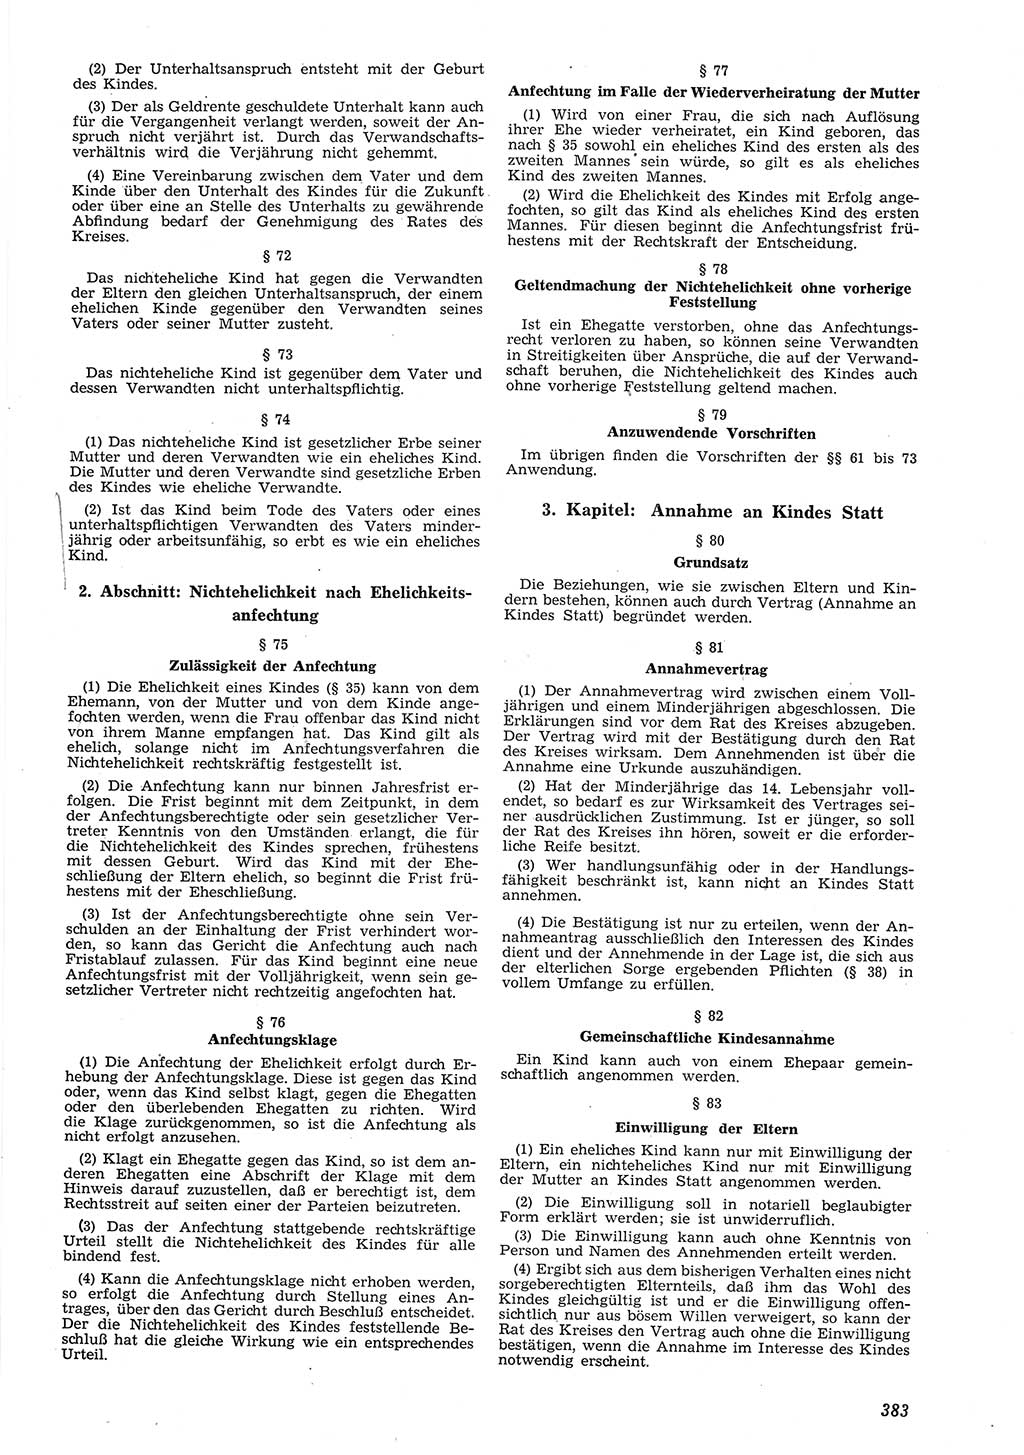 Neue Justiz (NJ), Zeitschrift für Recht und Rechtswissenschaft [Deutsche Demokratische Republik (DDR)], 8. Jahrgang 1954, Seite 383 (NJ DDR 1954, S. 383)